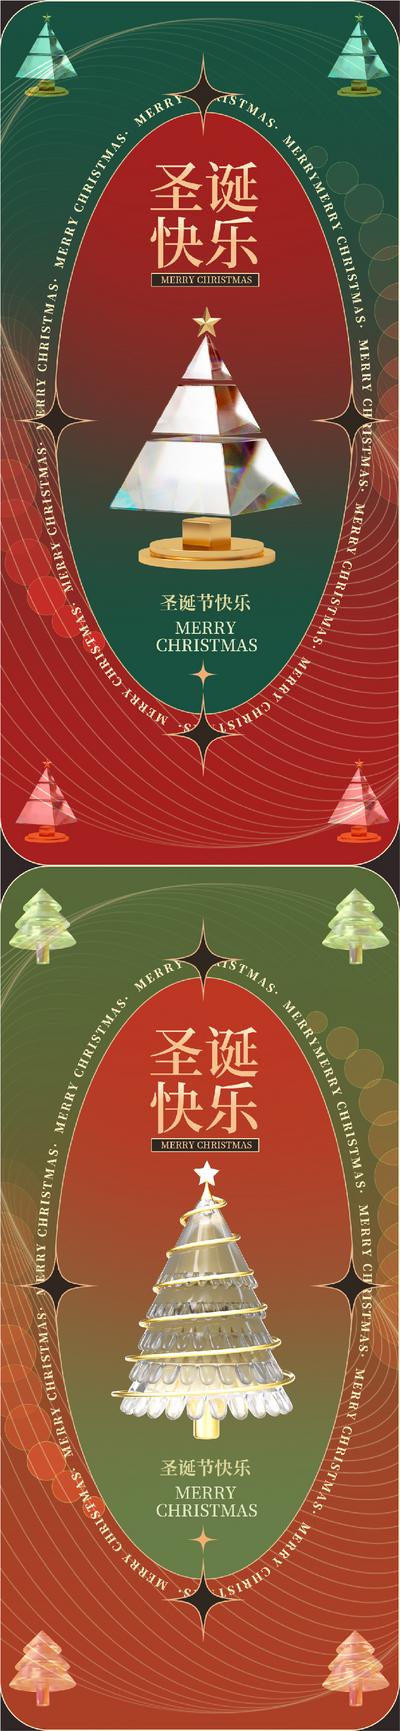 南门网 海报 医美 公历节日 圣诞节 圣诞树 插画 